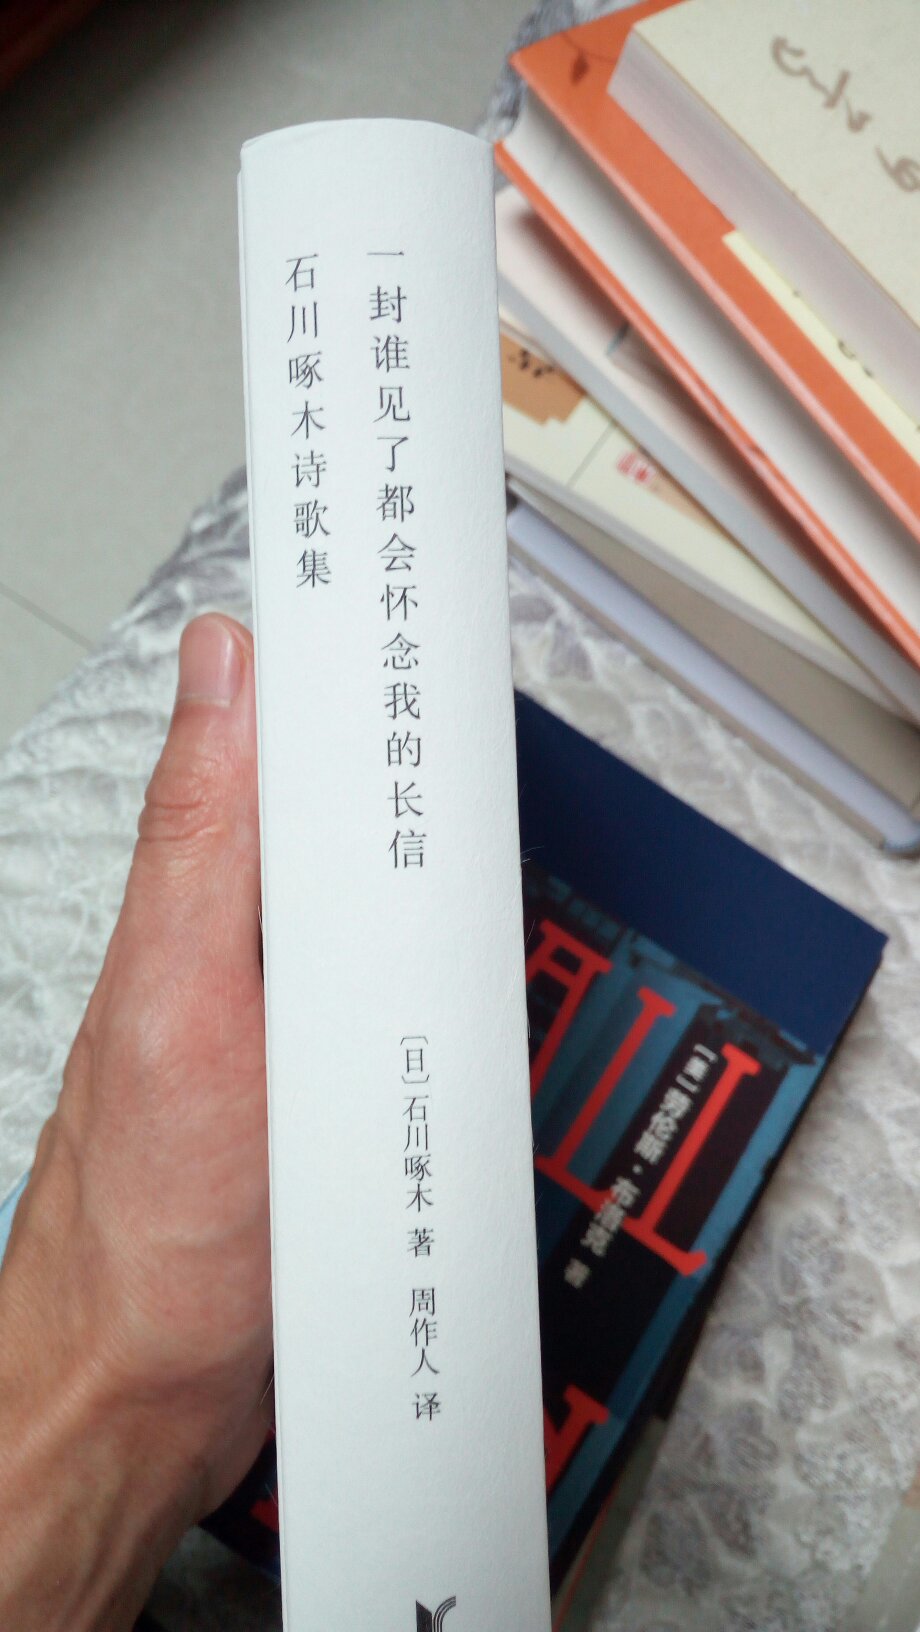 《石川啄木诗歌集》，系周作人晚年应出版社之约译出，周氏明言“他的诗歌是我顶喜欢的”、、、、、、